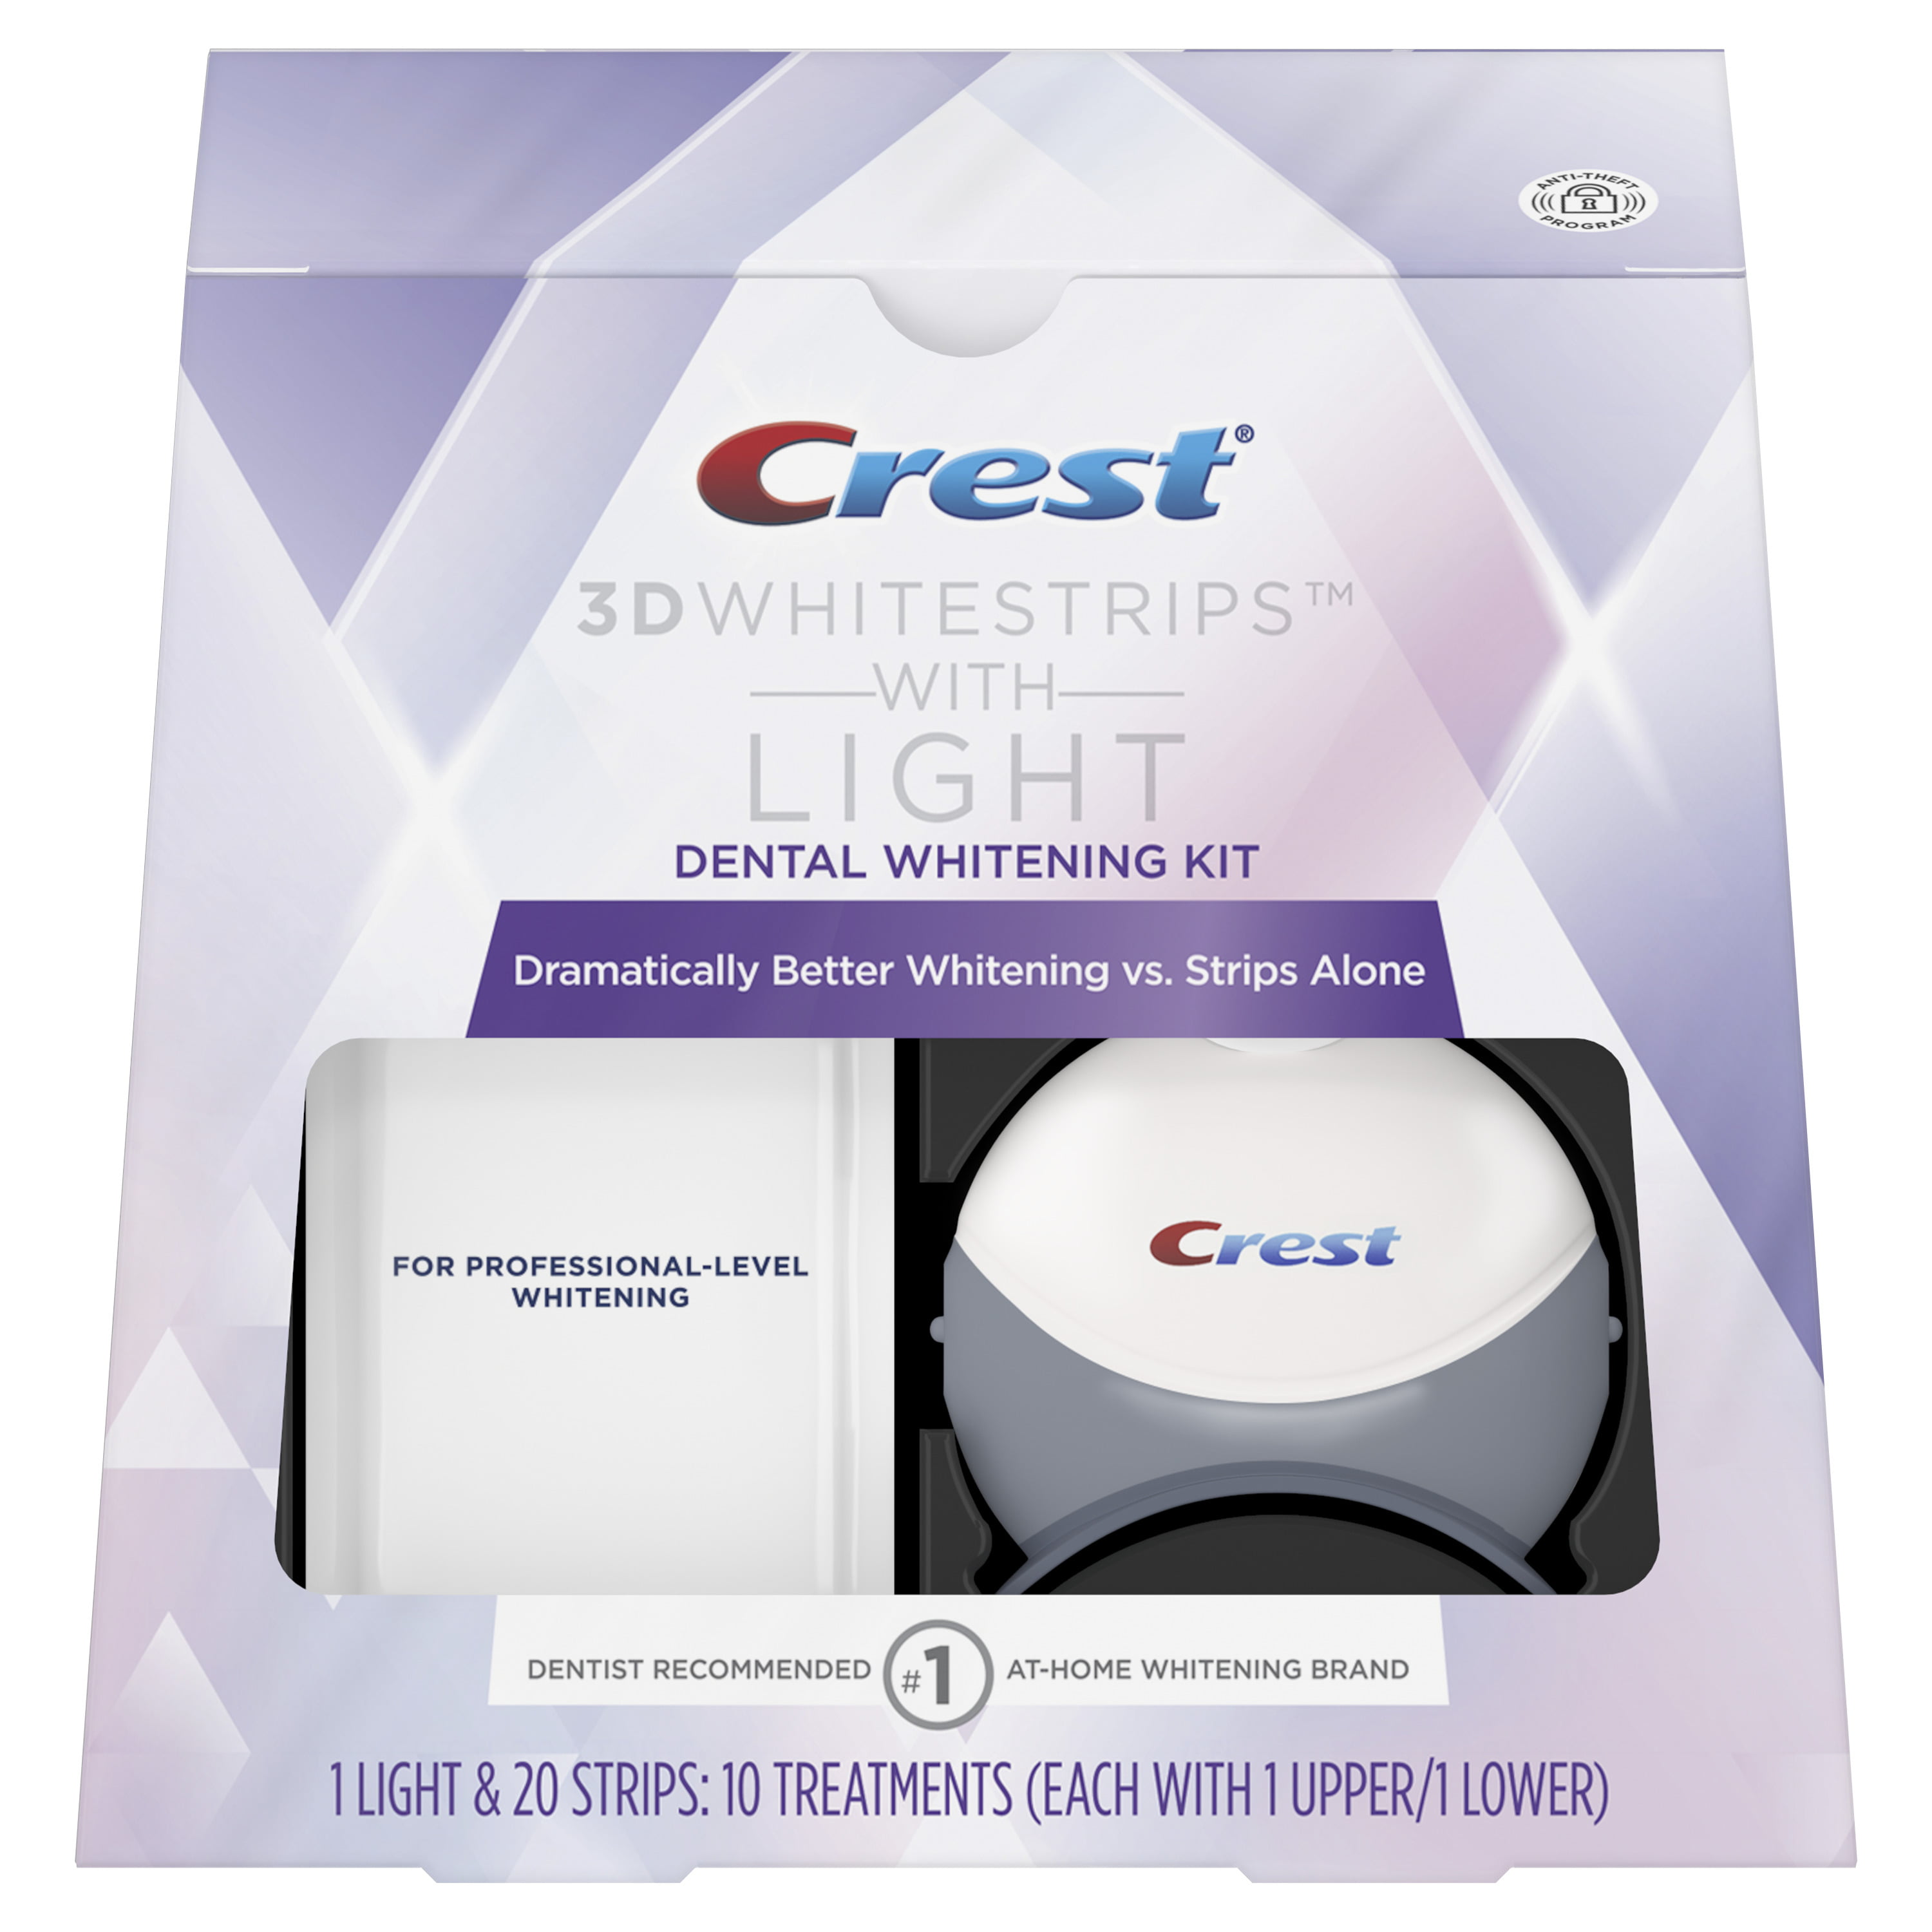 crest-3d-whitestrips-with-light-teeth-whitening-kit-25-rebate